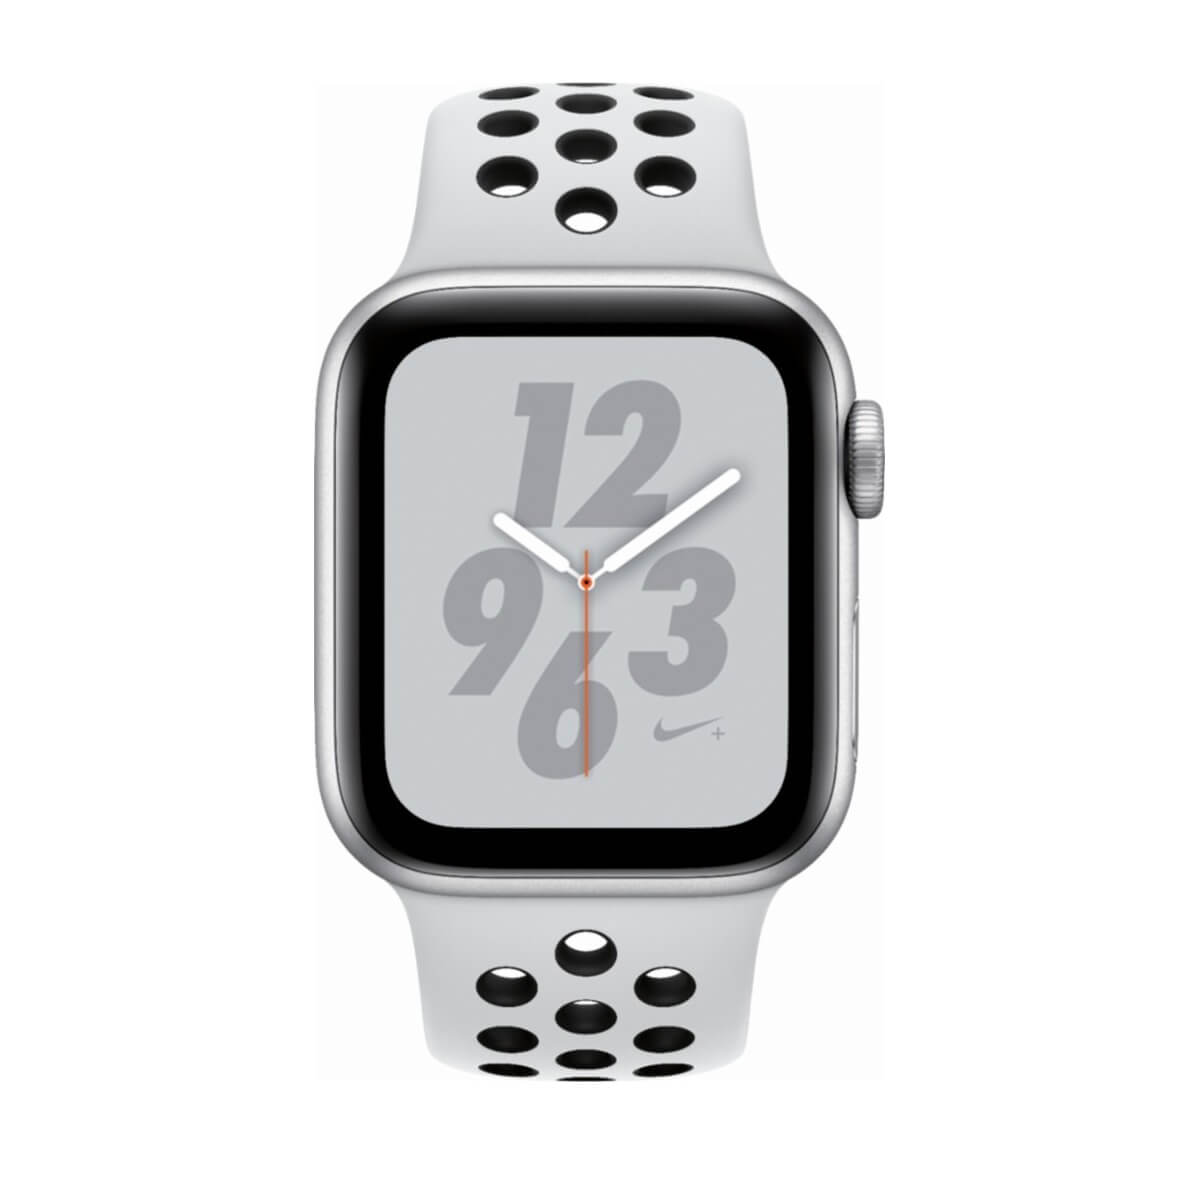 Apple Watch Nike+ Series 4 de 40 mm cuerpo de aluminio en color plata con banda deportiva negra y blanca oro - Plata